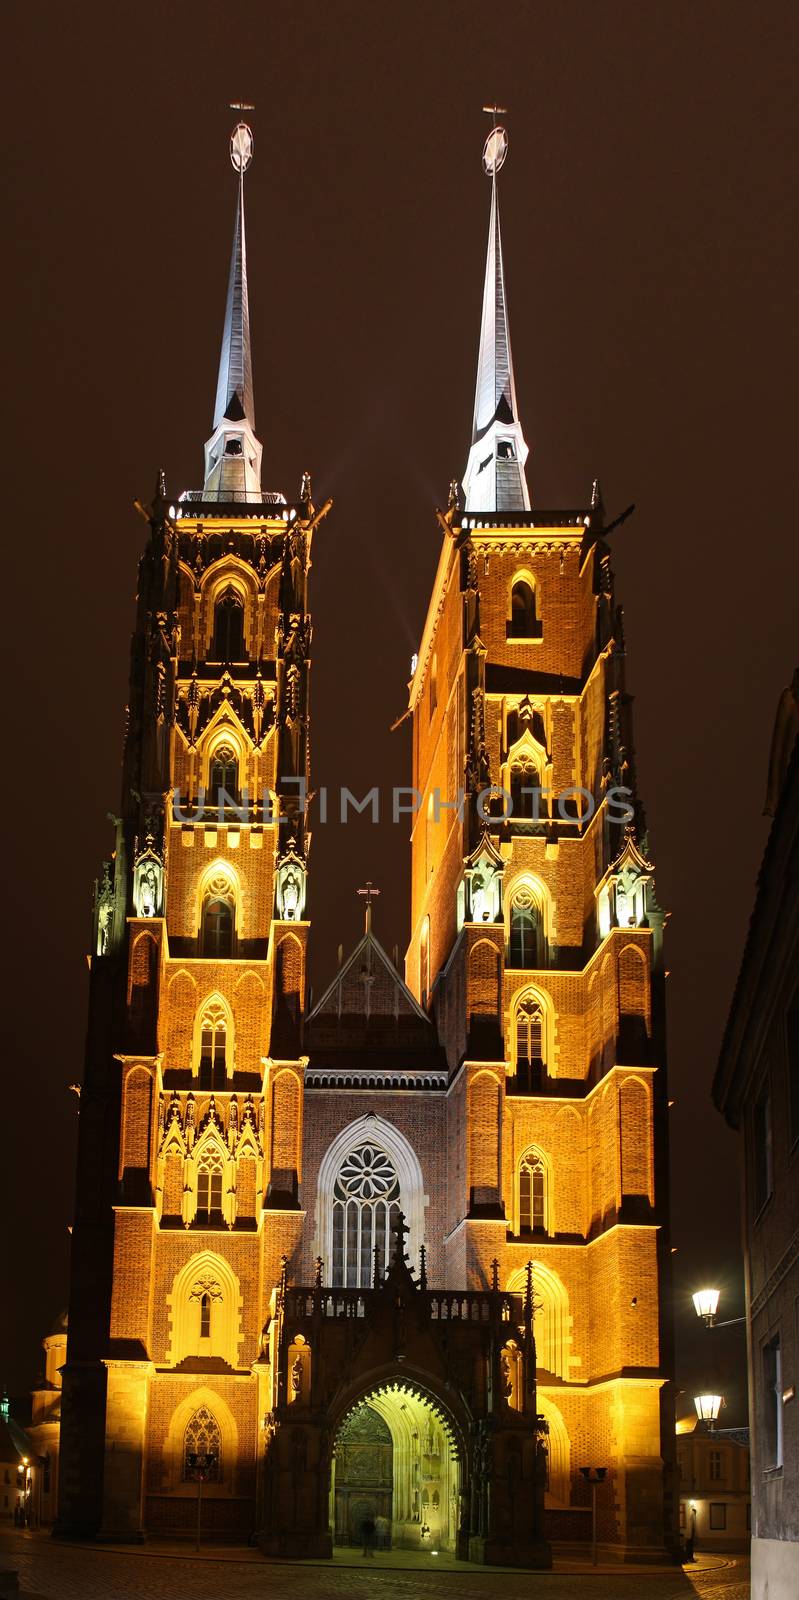 Katedra in Wroclaw, Poland